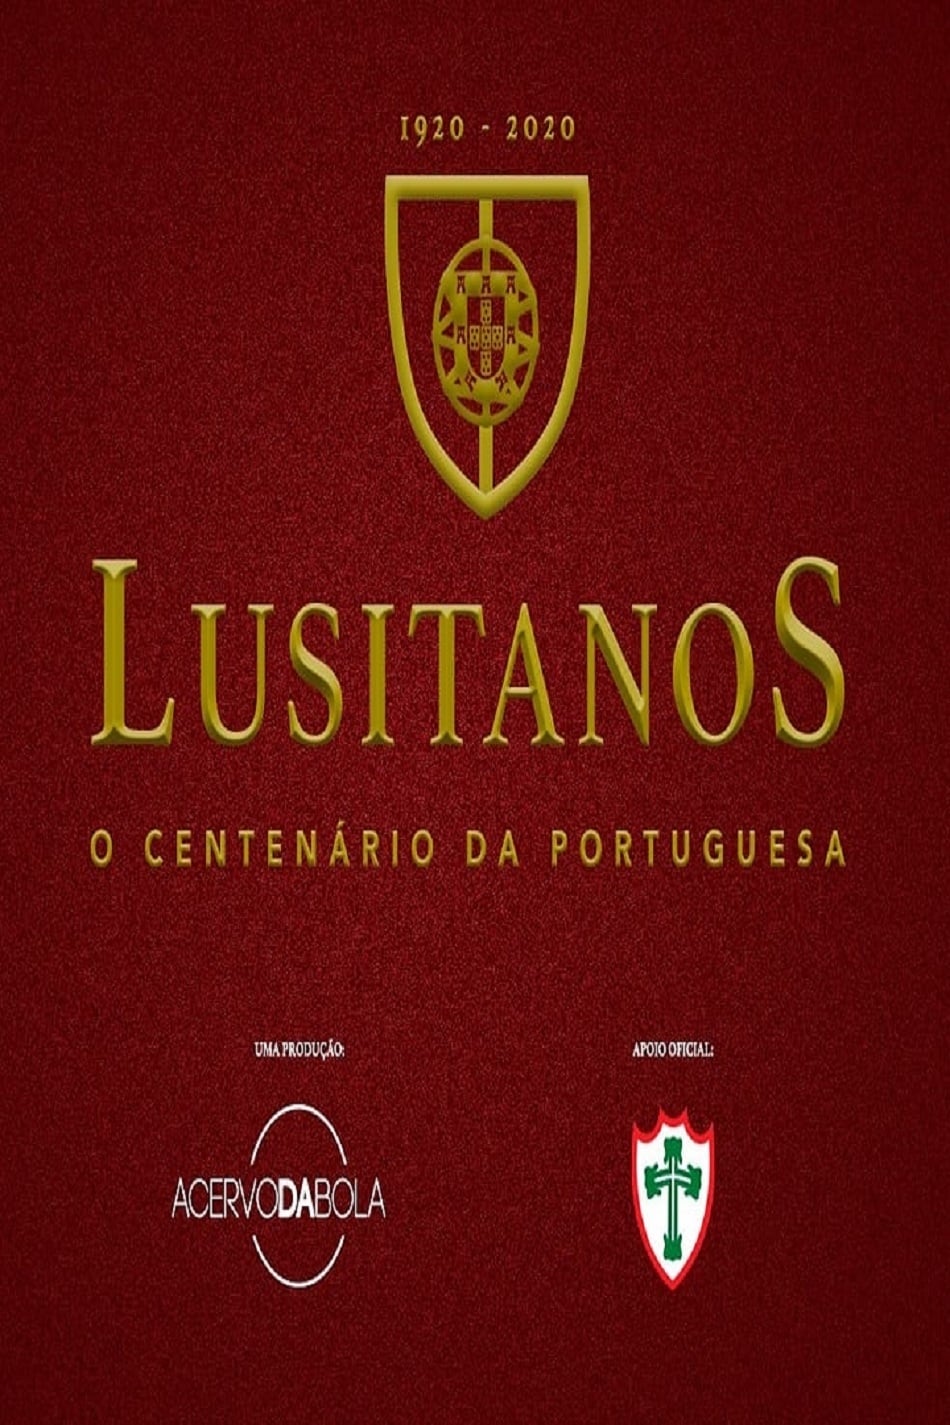 Lusitanos - O Centenário da Portuguesa